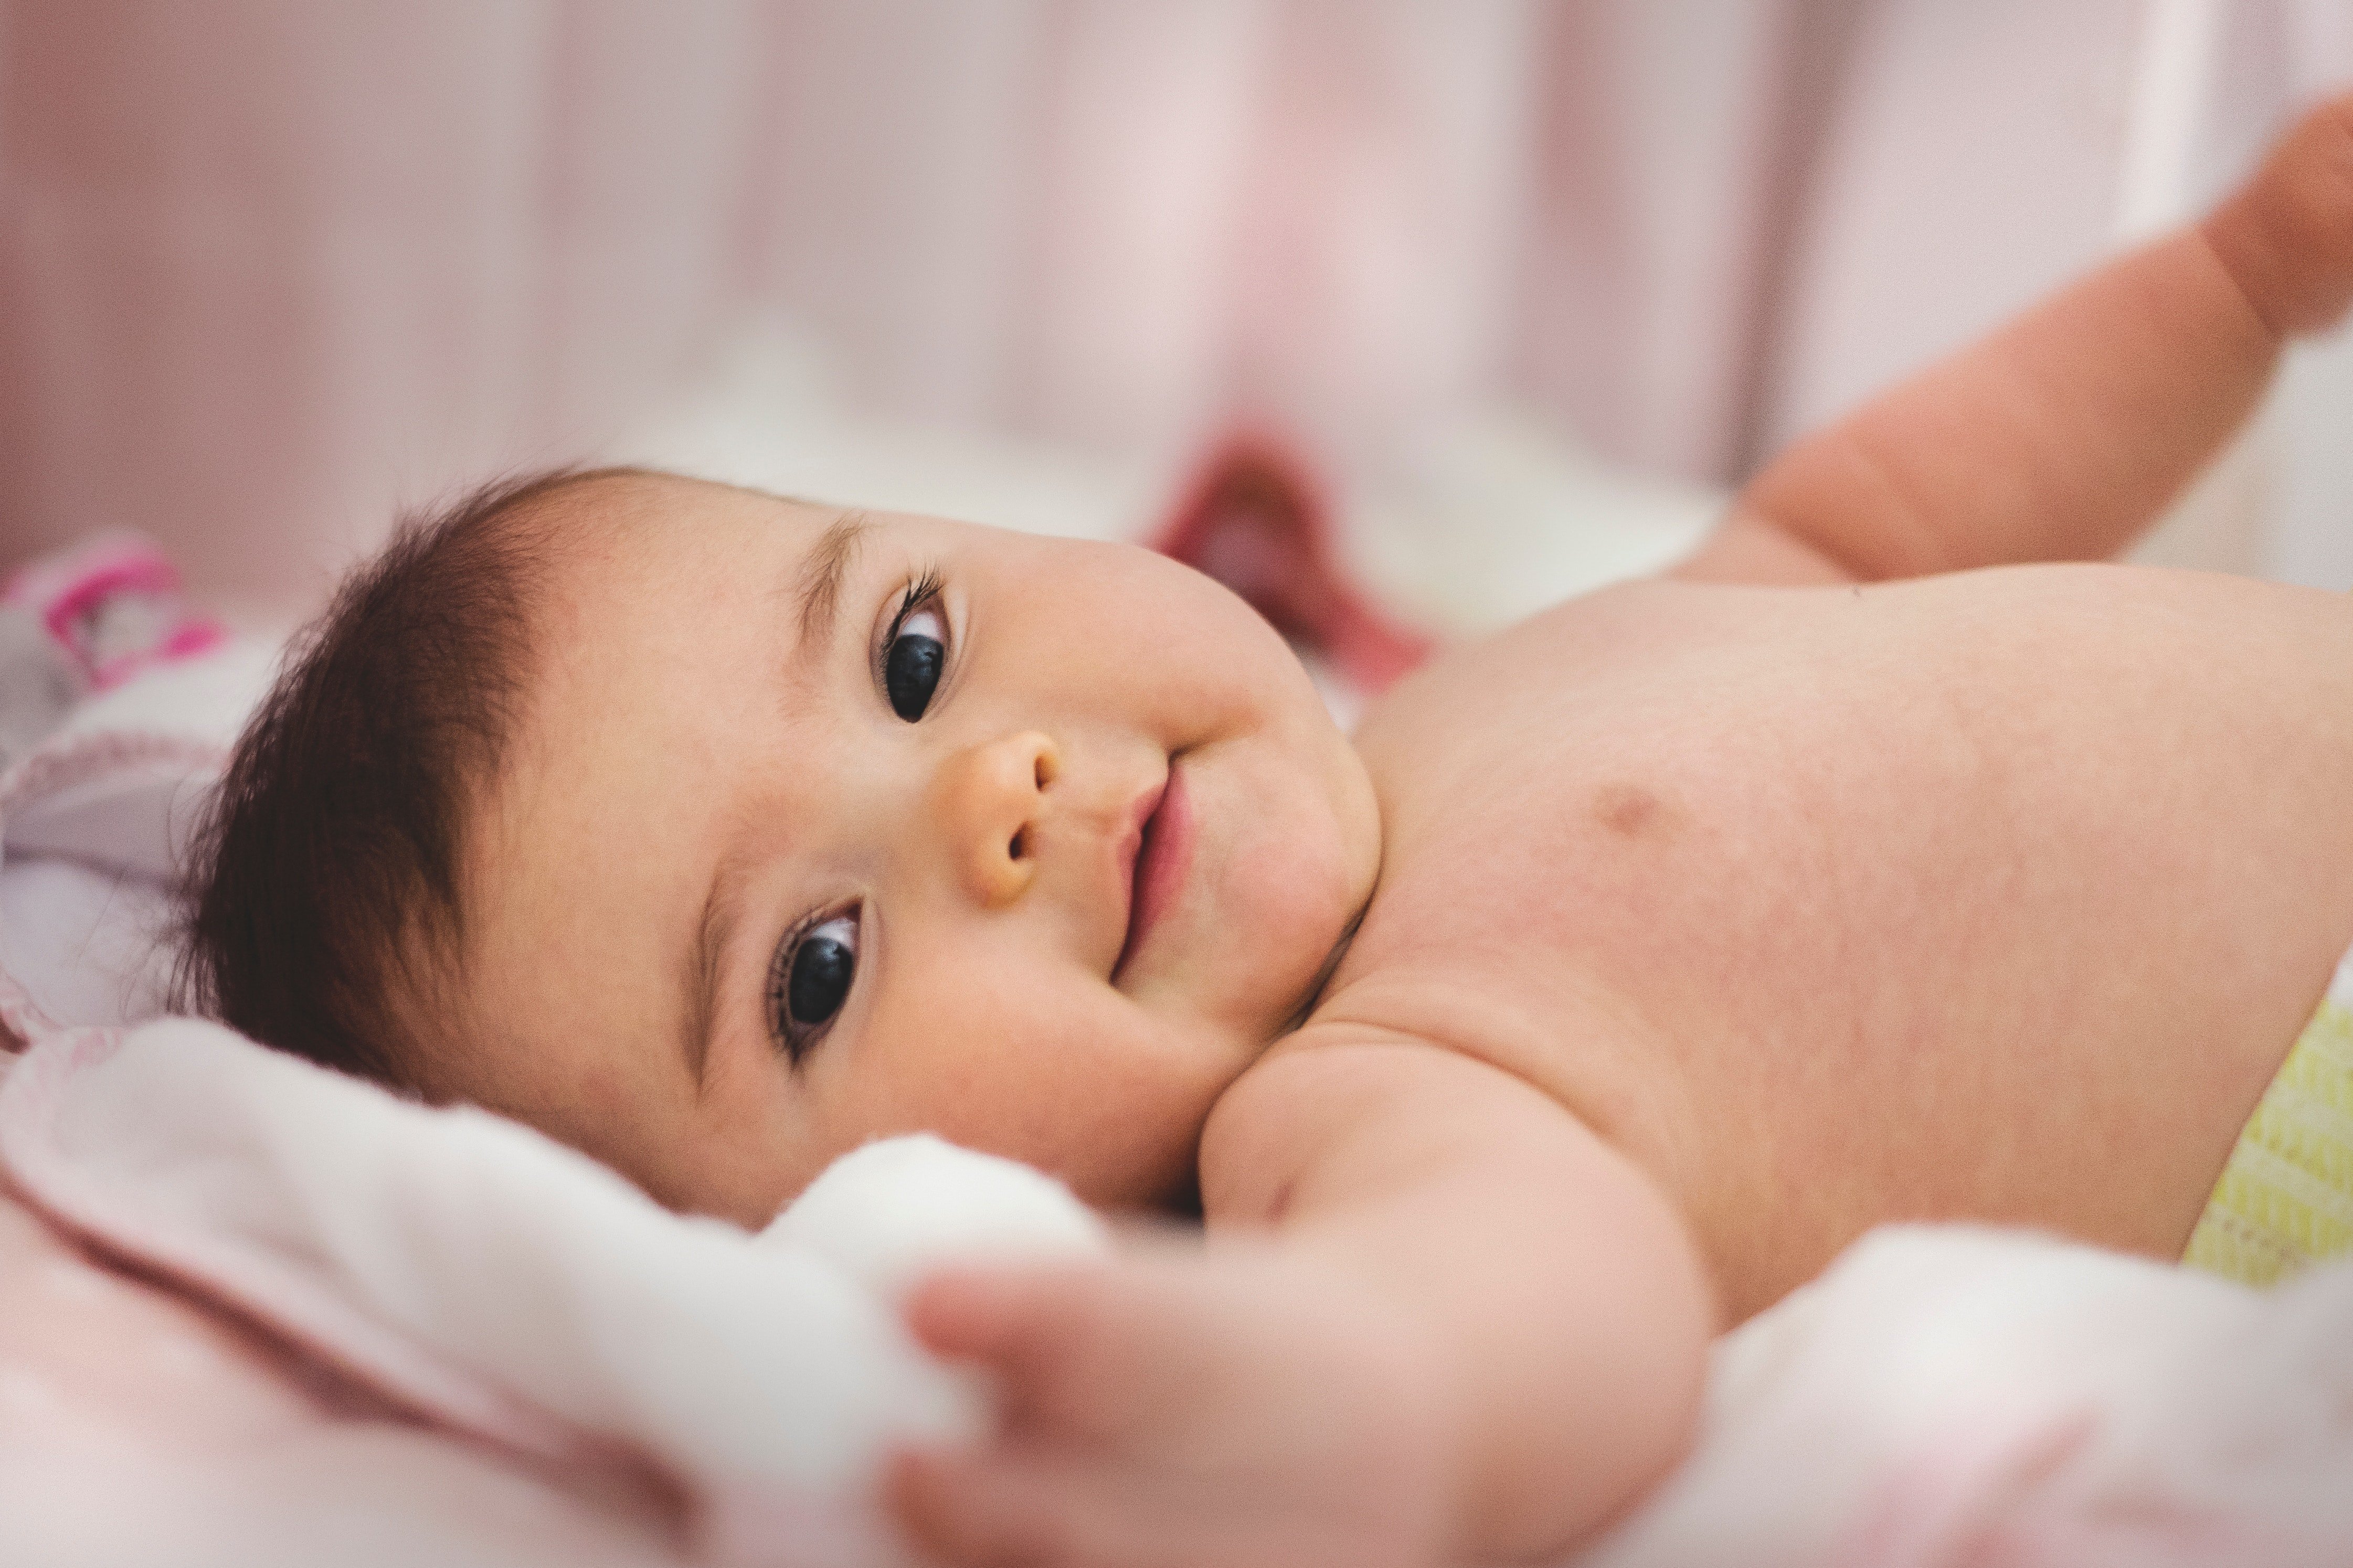 Cute baby. | Source: Pexels